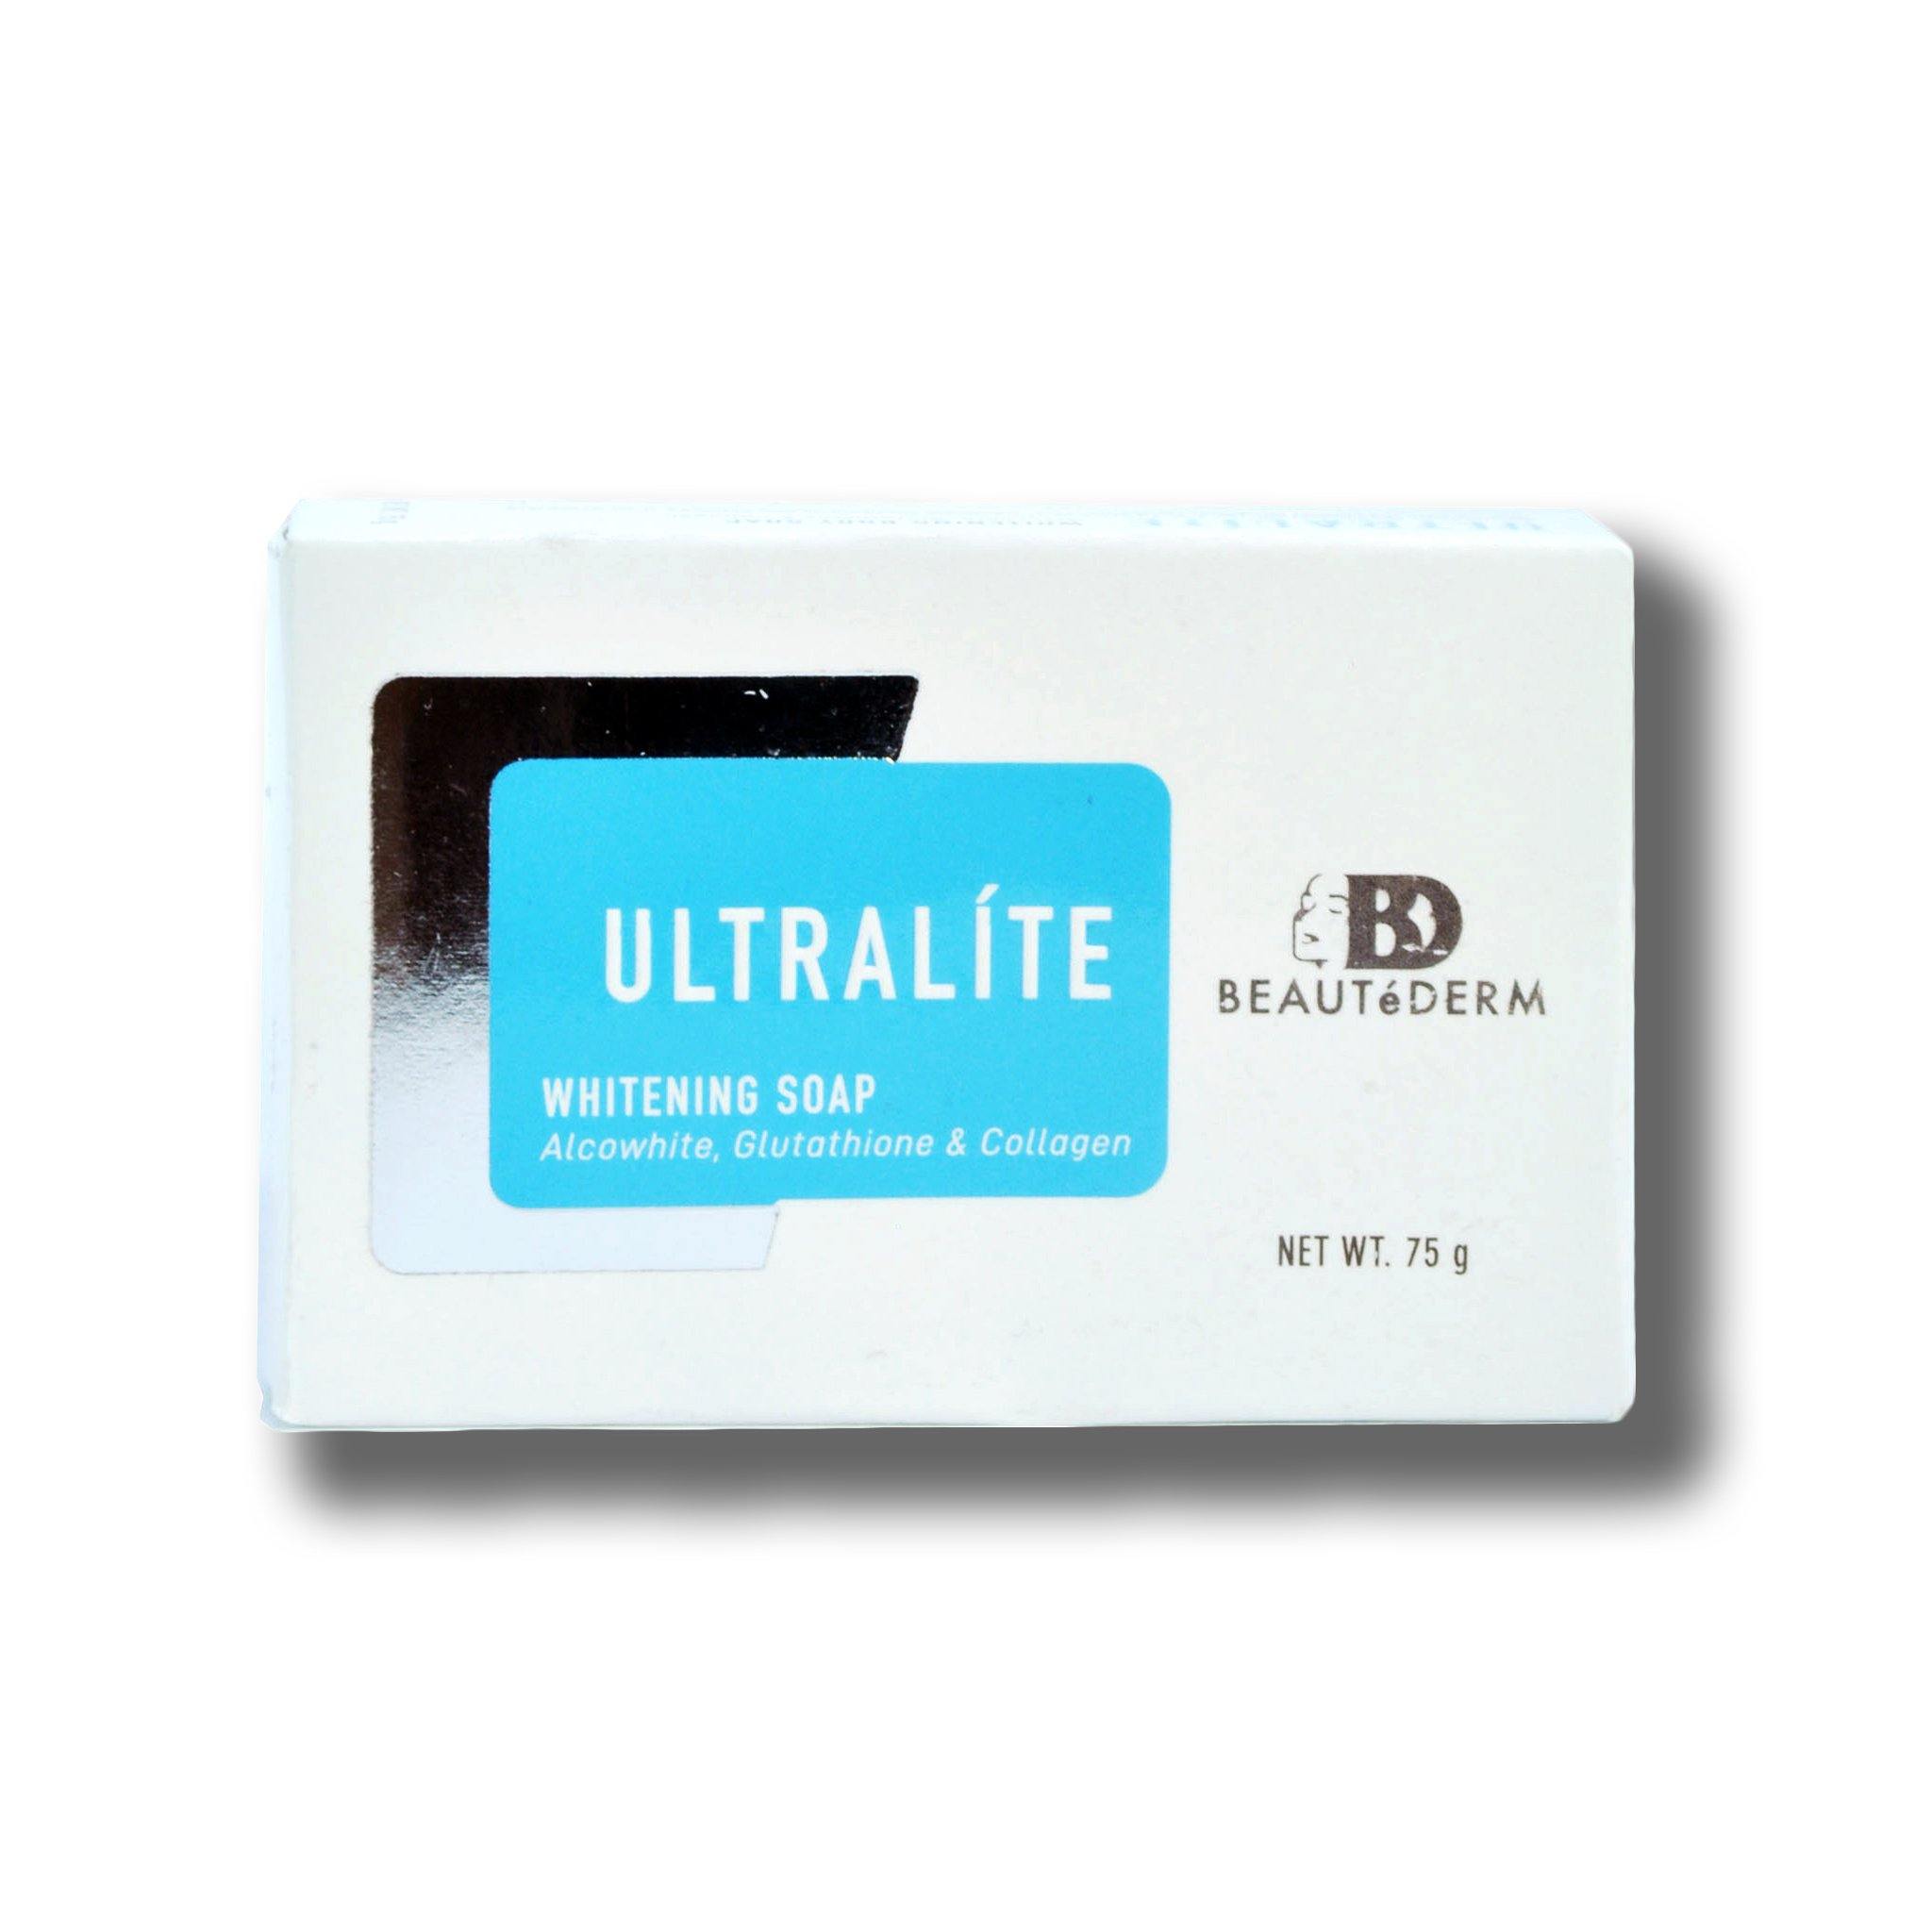 Ultralie Whitening Soap (with Algowhite, Glutathione & Collagen), 75g, by Beautederm